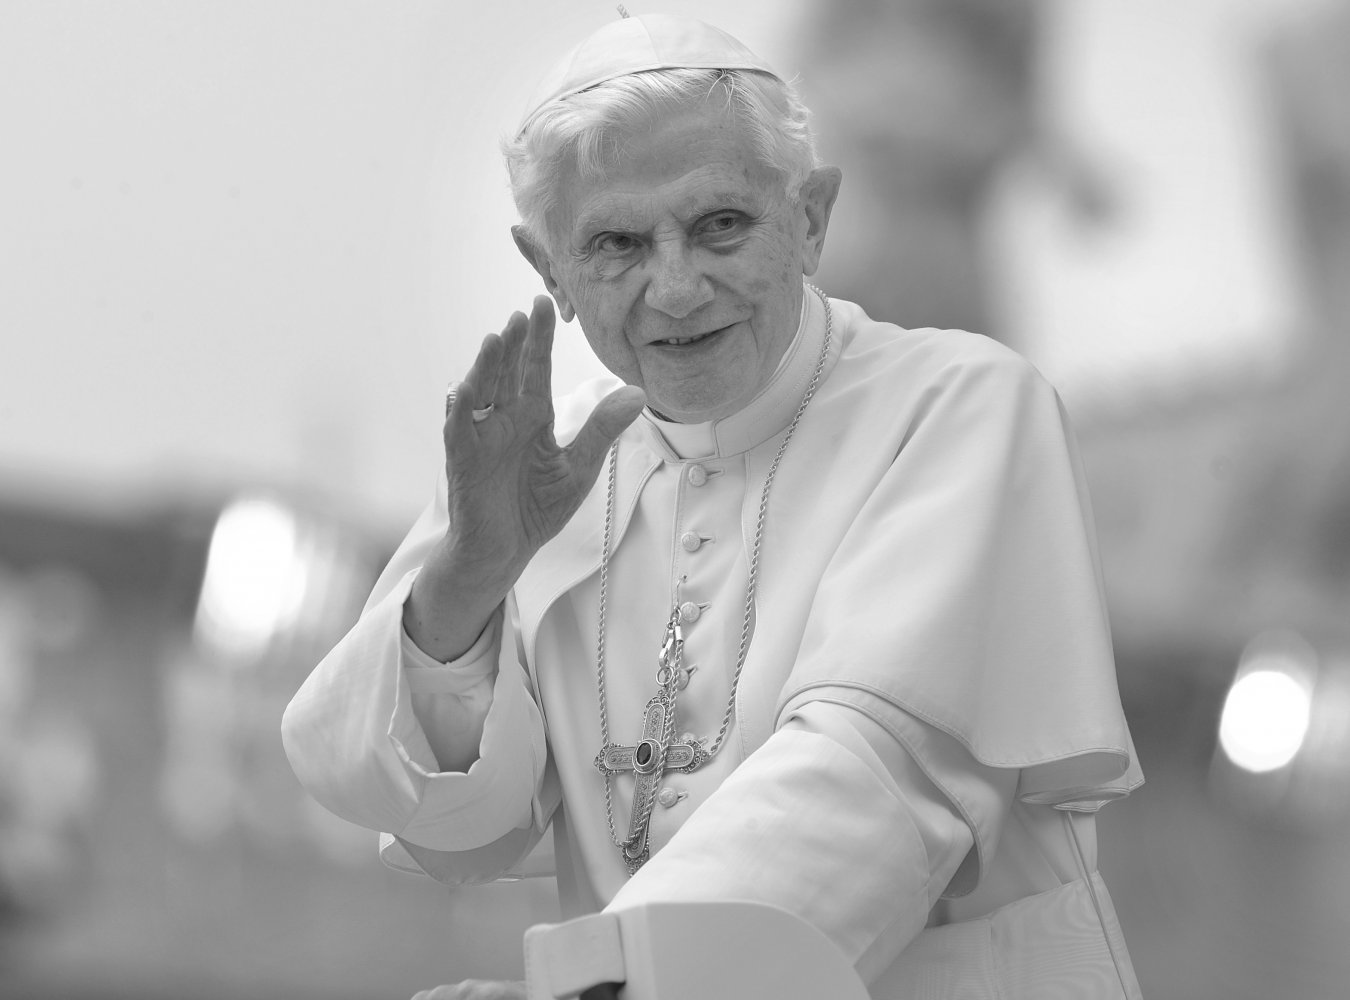 Ministerpräsident Hendrik Wüst zum Tod von Papst emeritus Benedikt XVI.